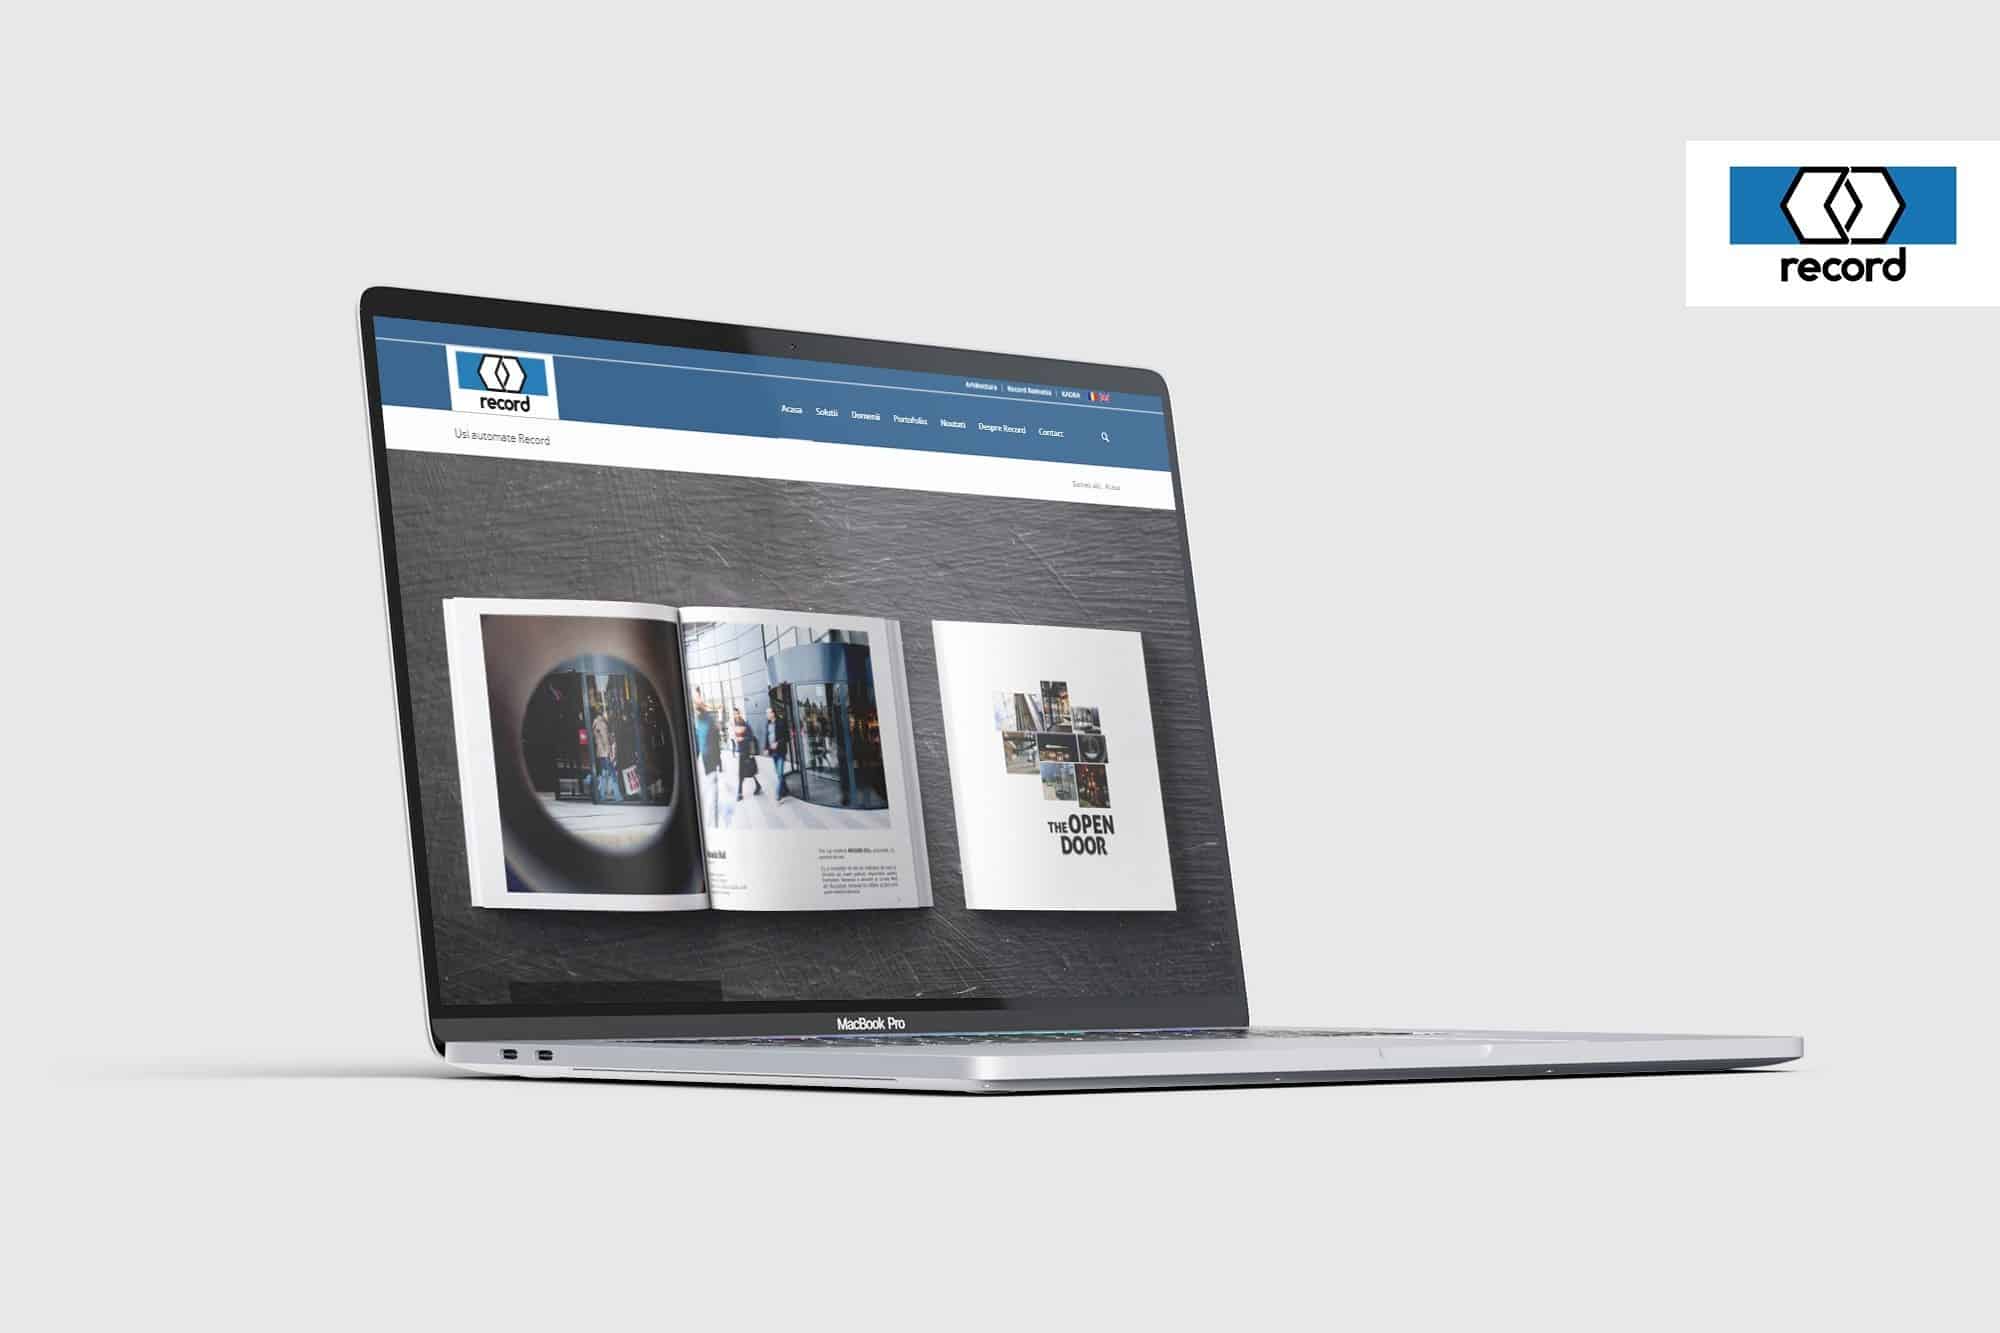 Proiect web design Toud - Record Romania, website design, web design, UX design, UI design, realizare site web